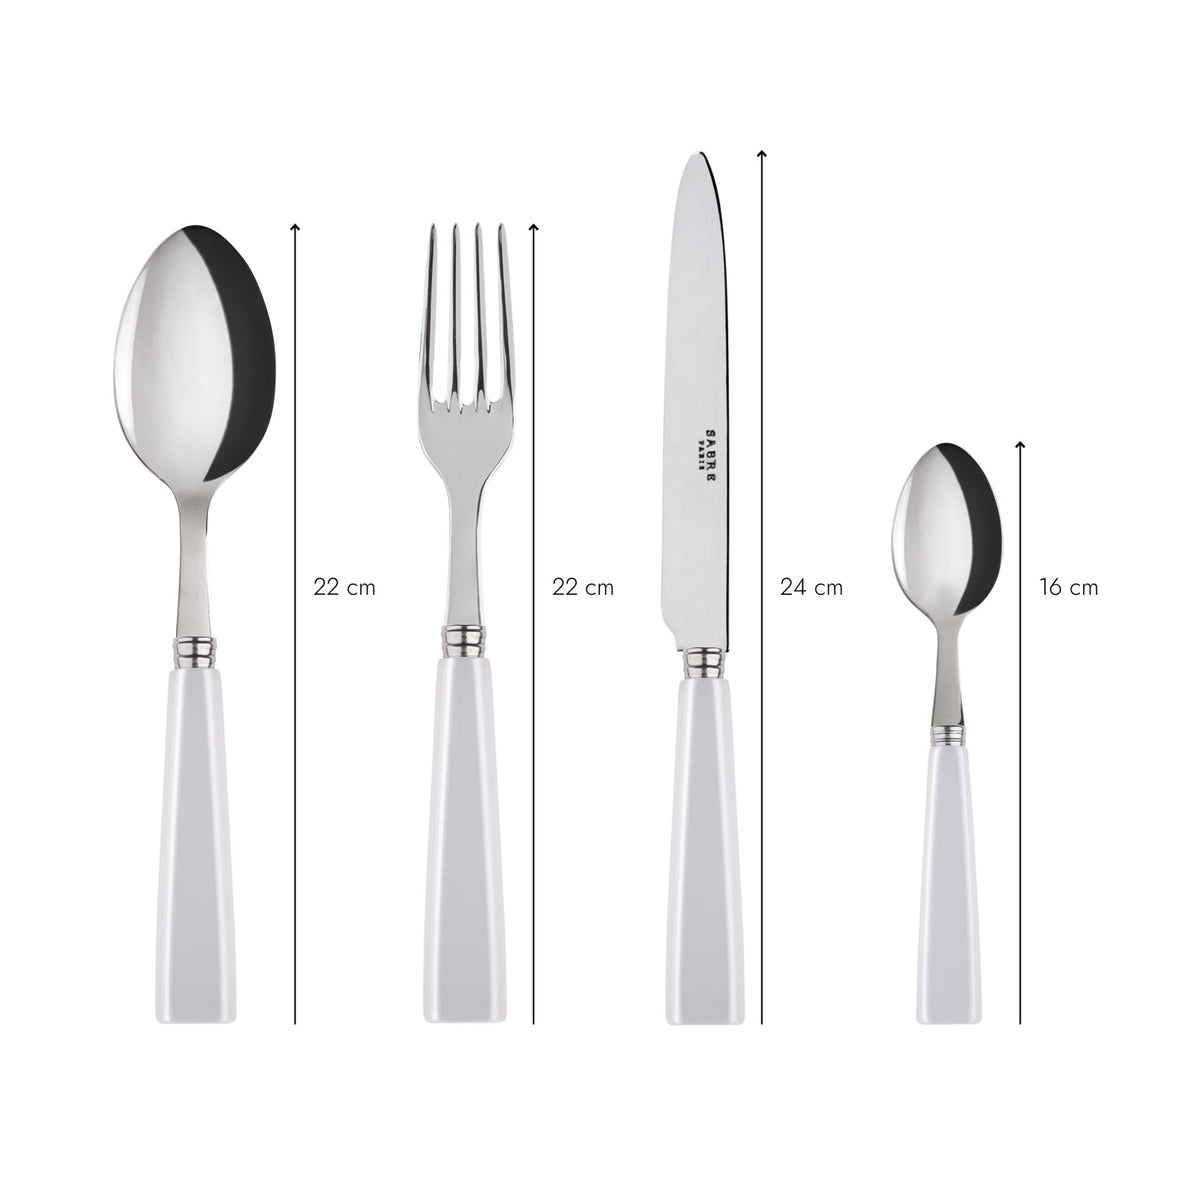 Icone Dinner Fork